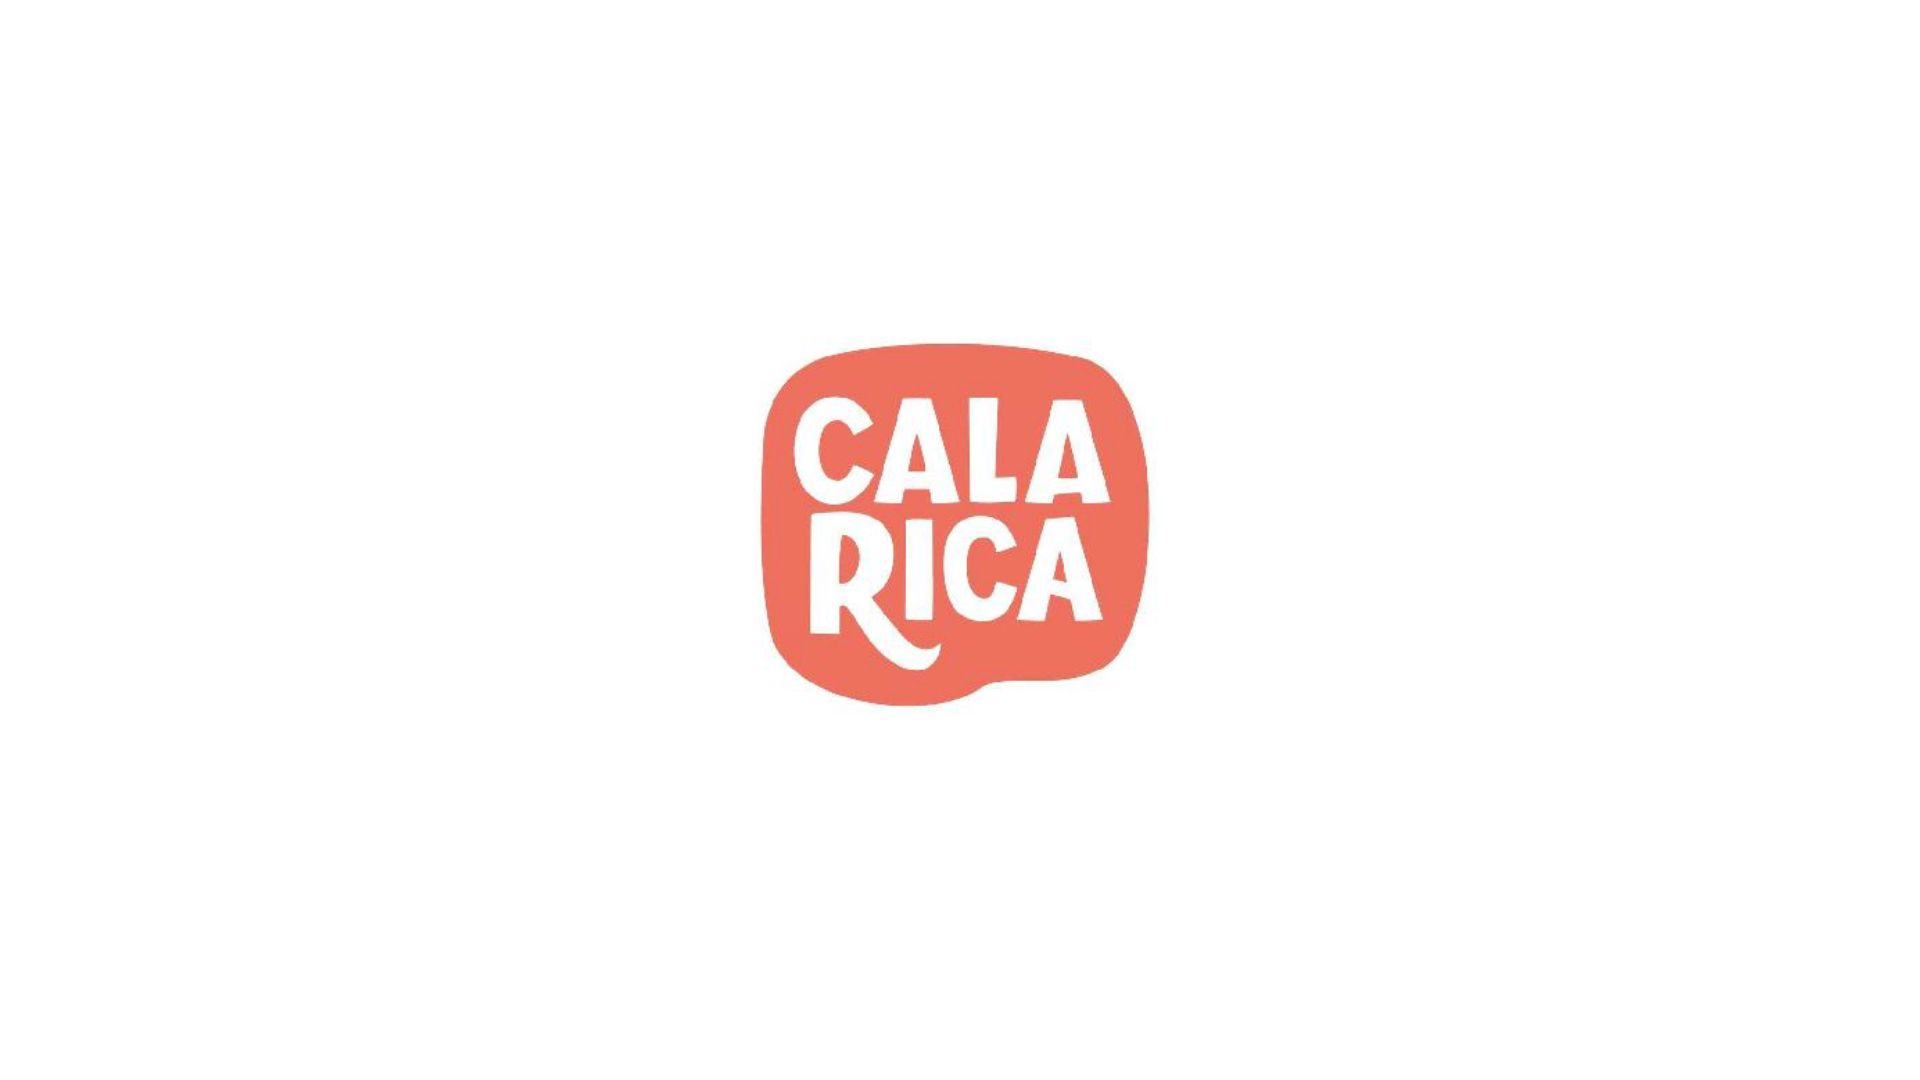 PESCADOS LA CARIHUELA registra una nueva marca de elaborados, "CALA RICA"